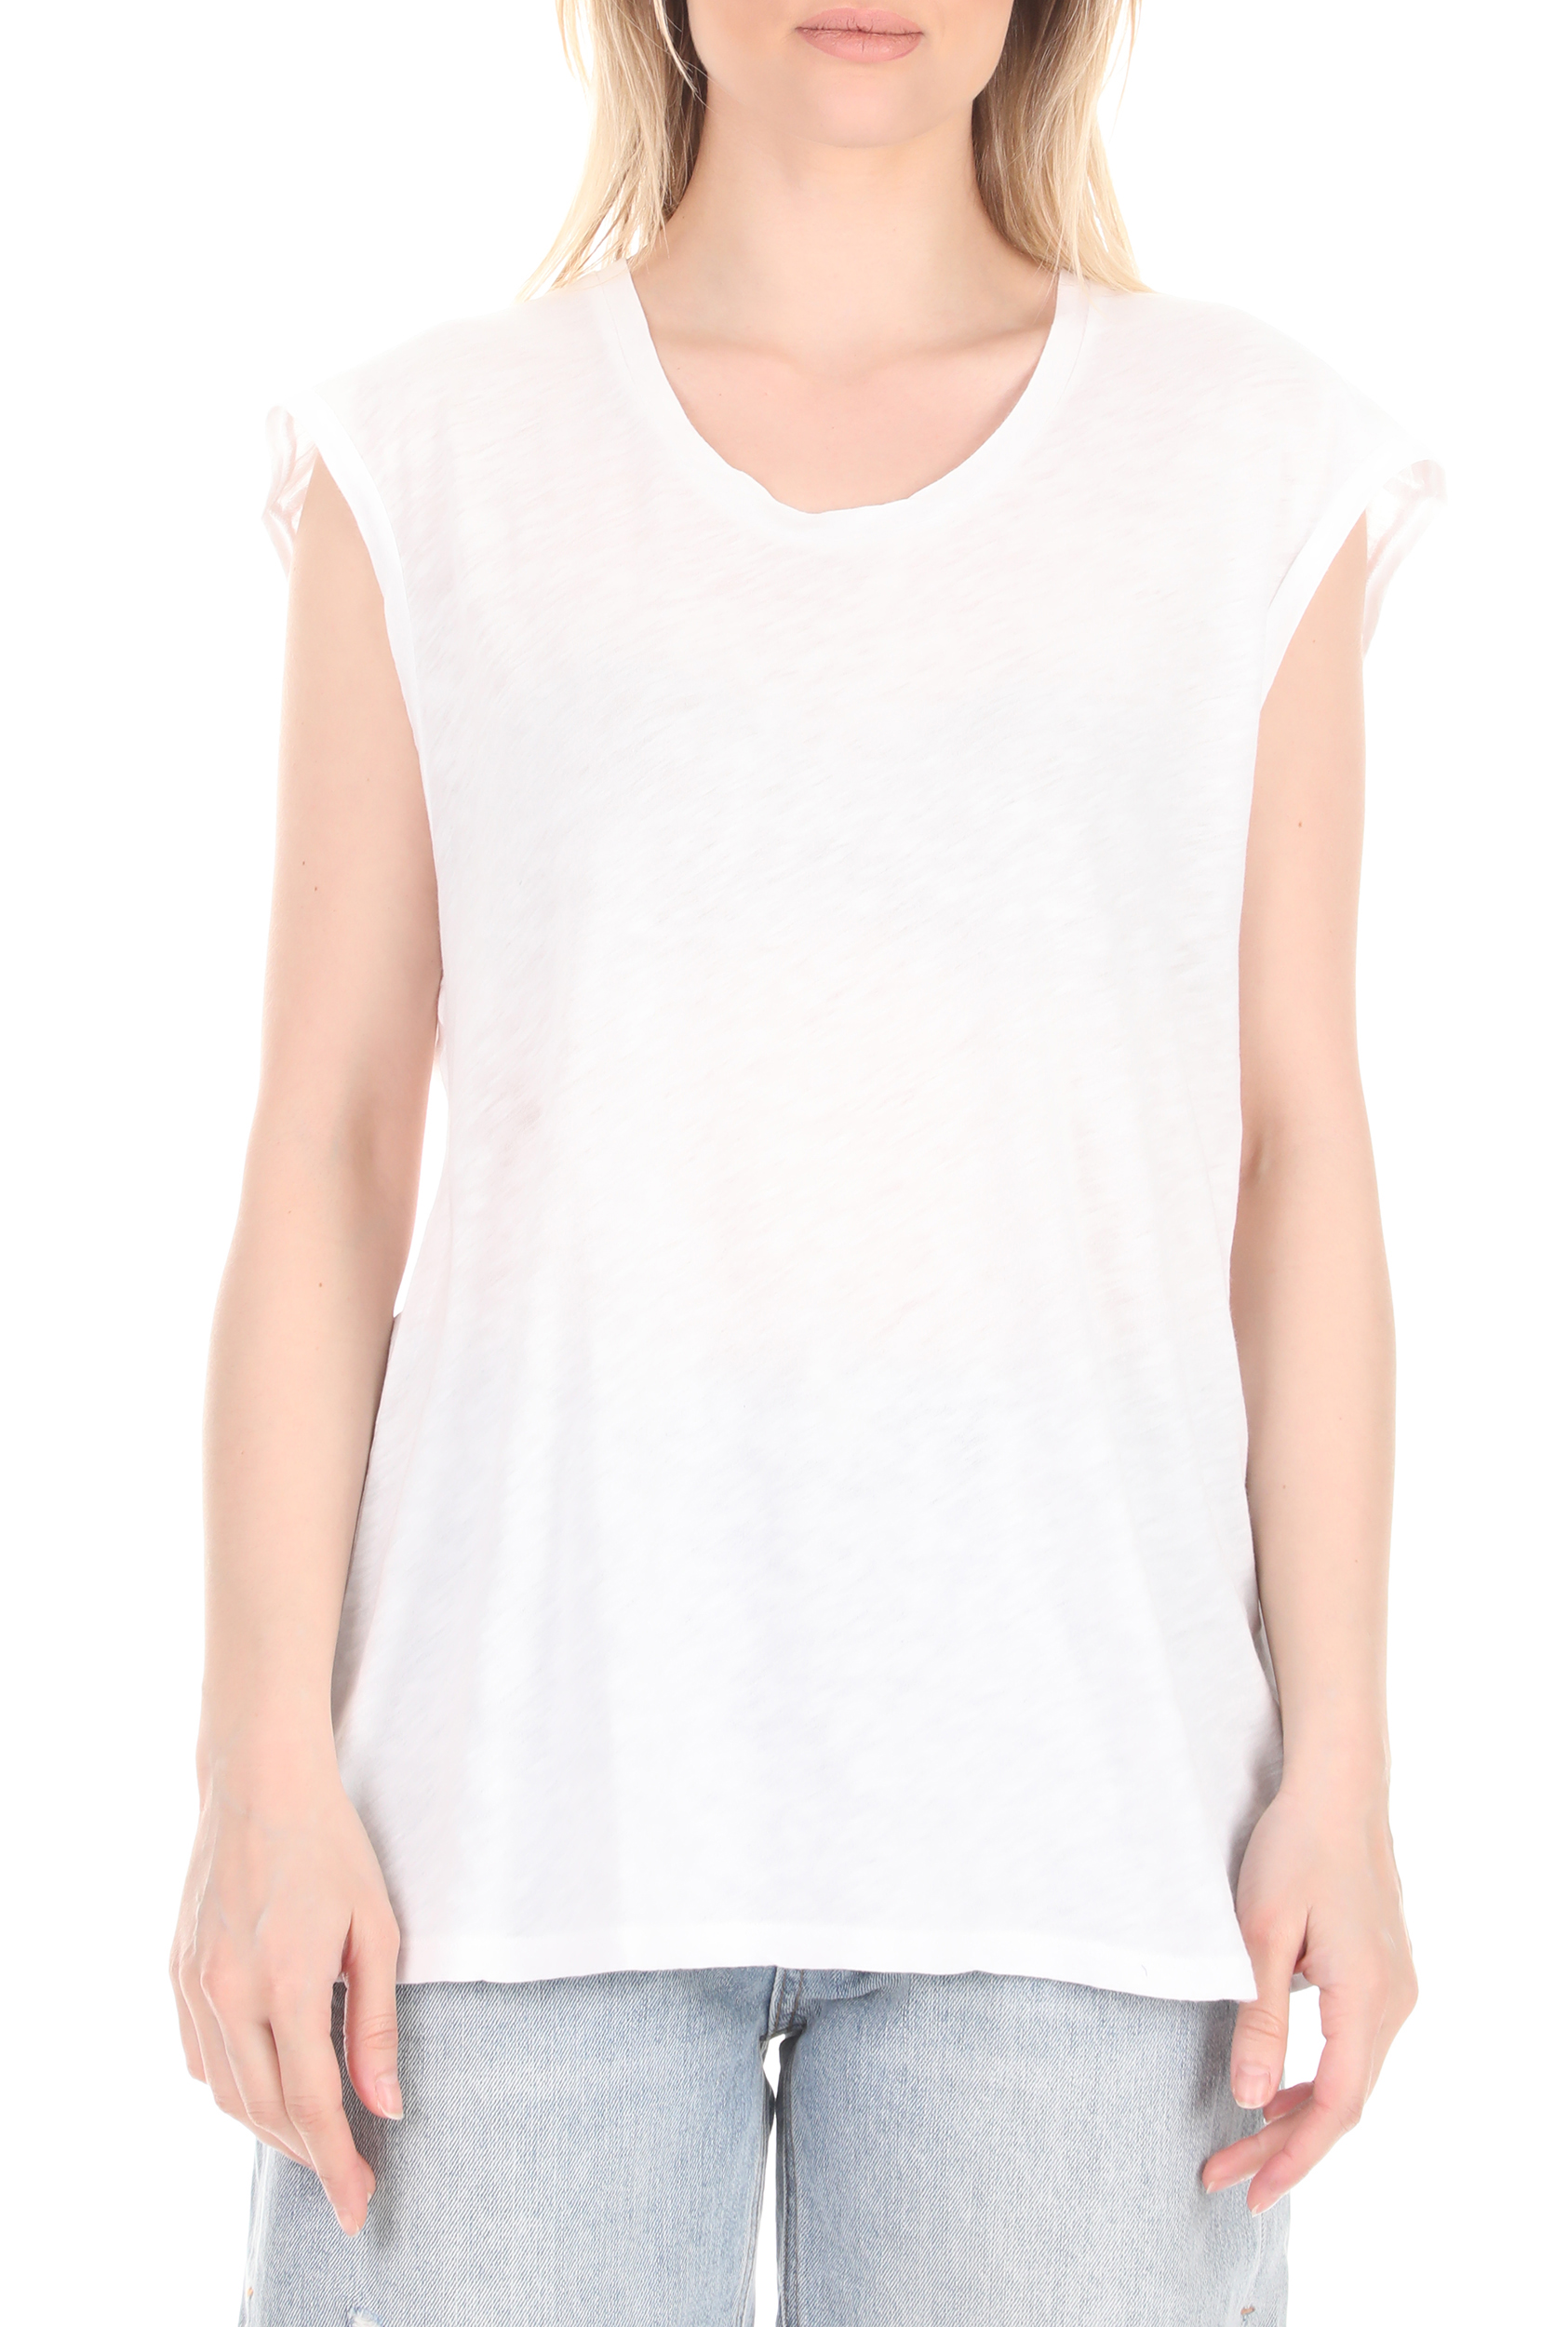 Γυναικεία/Ρούχα/Μπλούζες/Αμάνικες AMERICAN VINTAGE - Γυναικεία μπλούζα AMERICAN VINTAGE λευκή